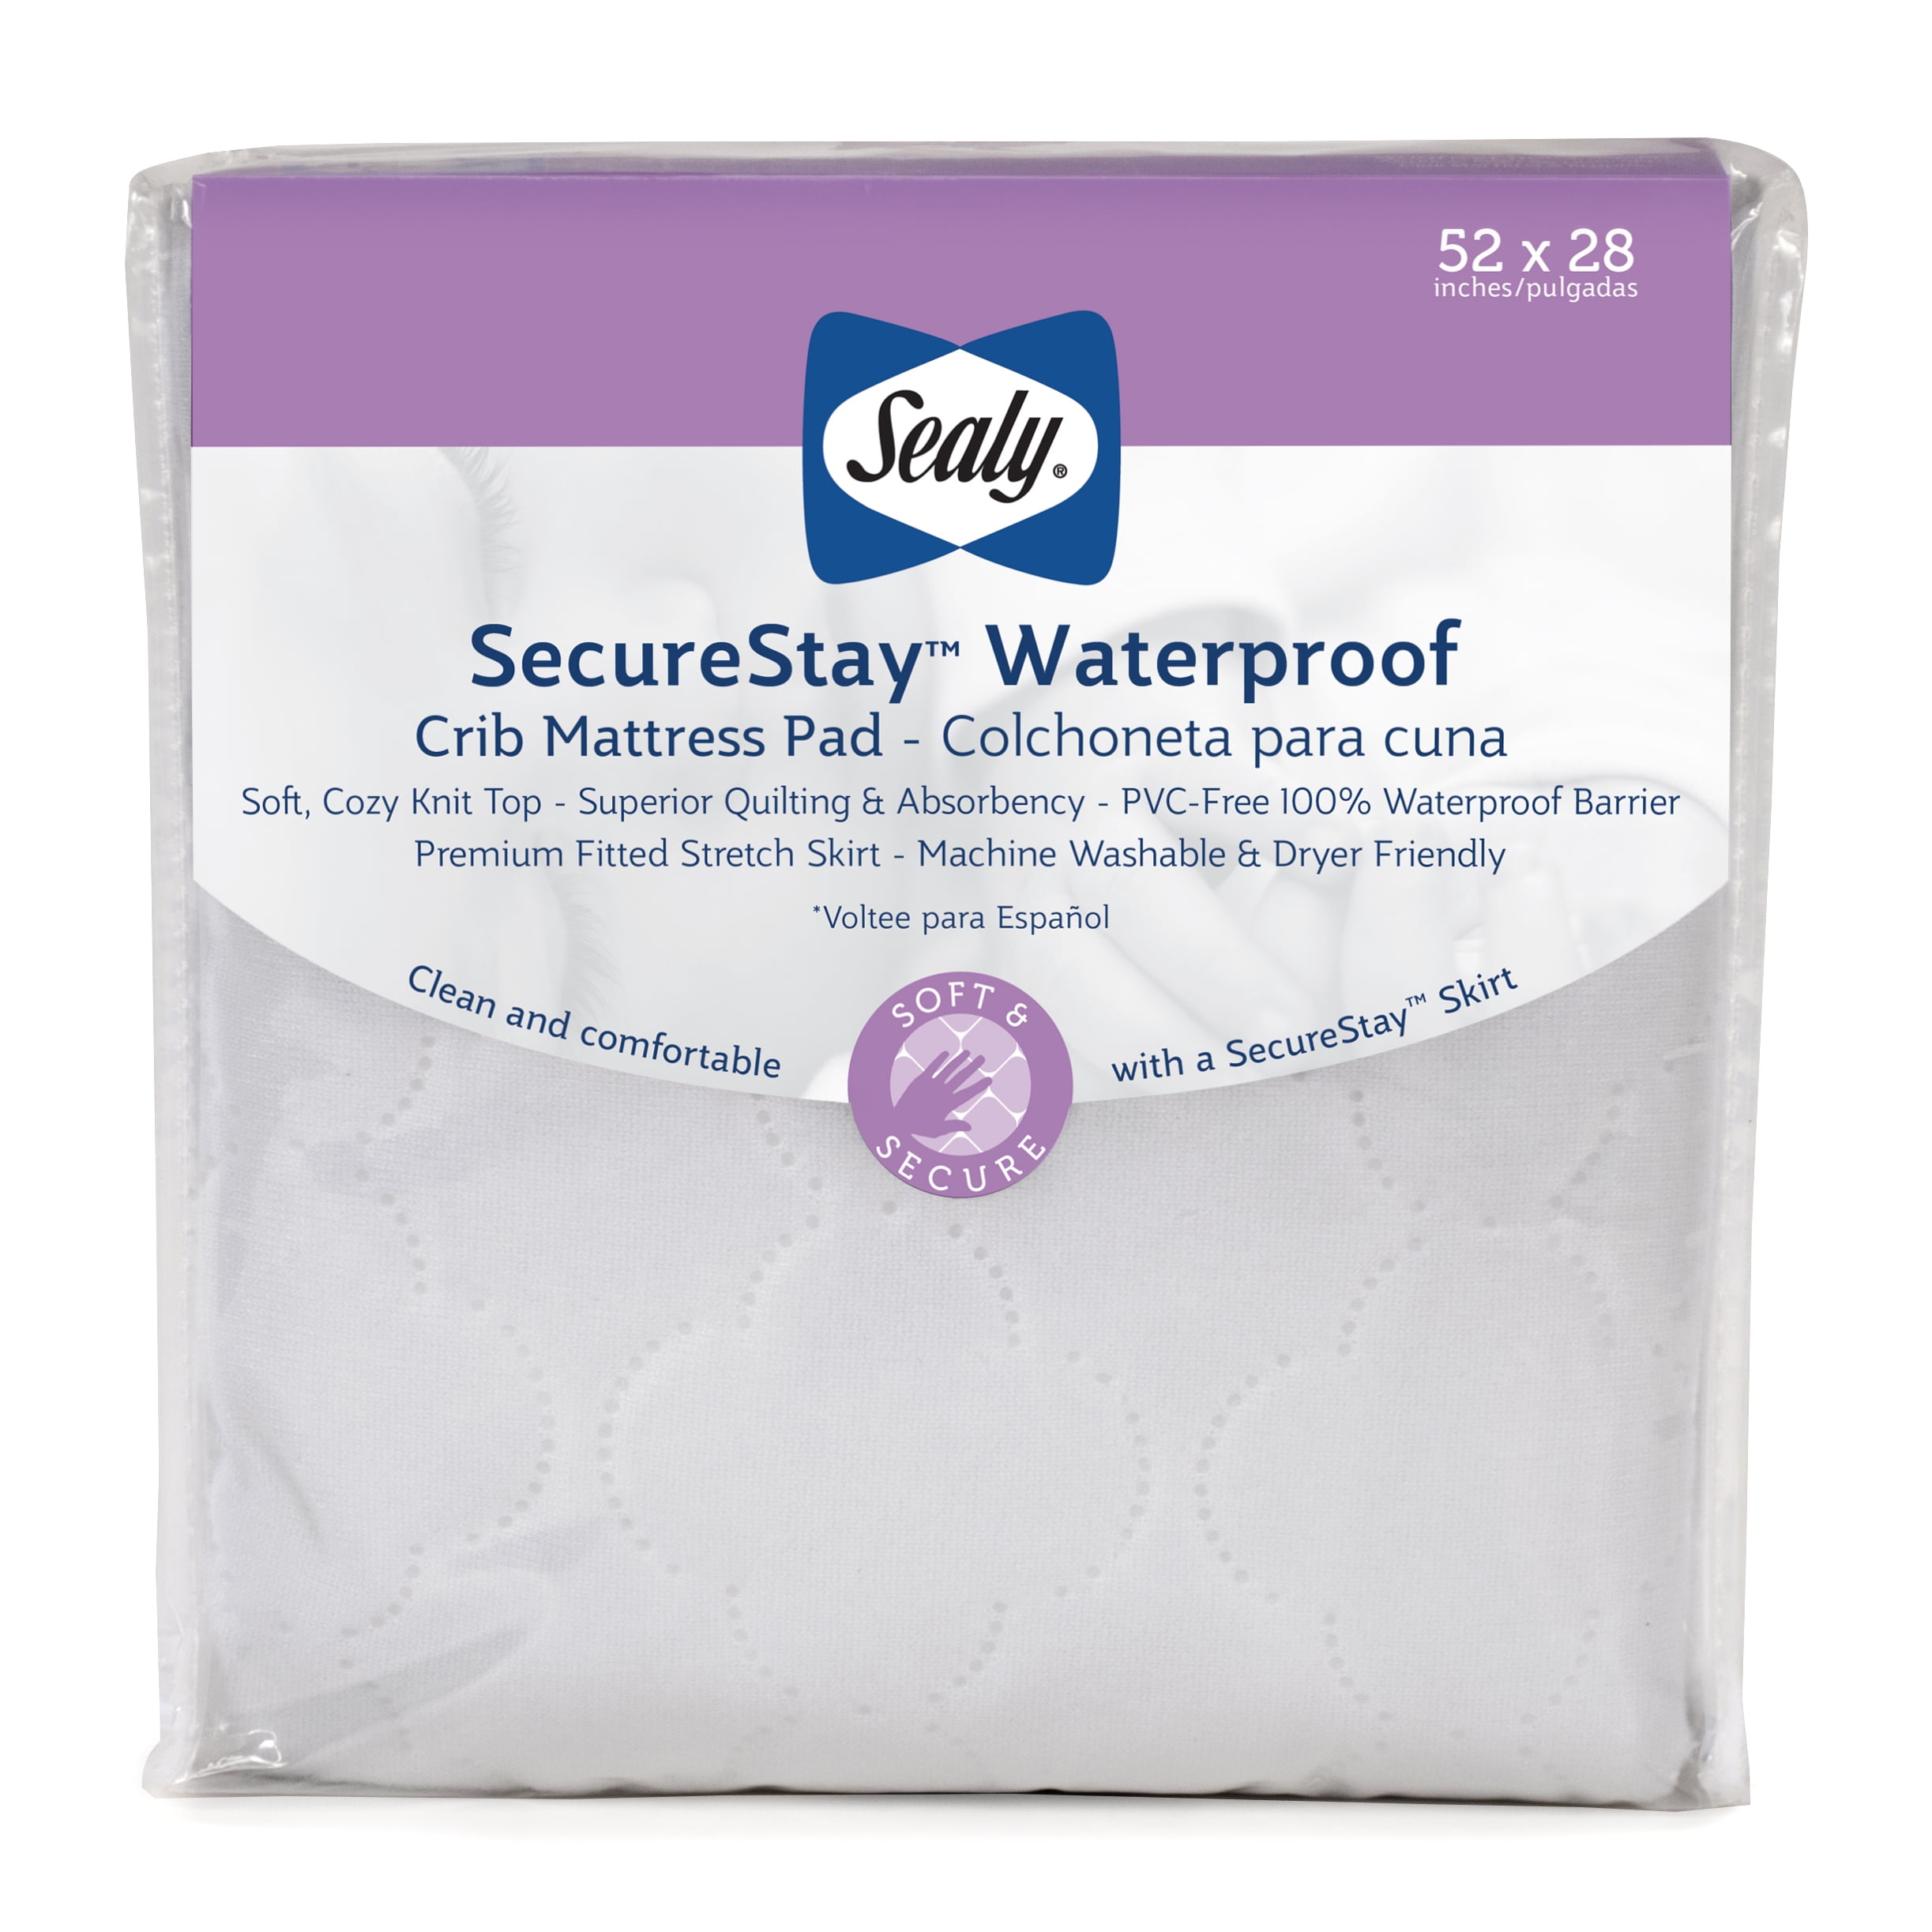 Sealy SecureStay Waterproof Crib 